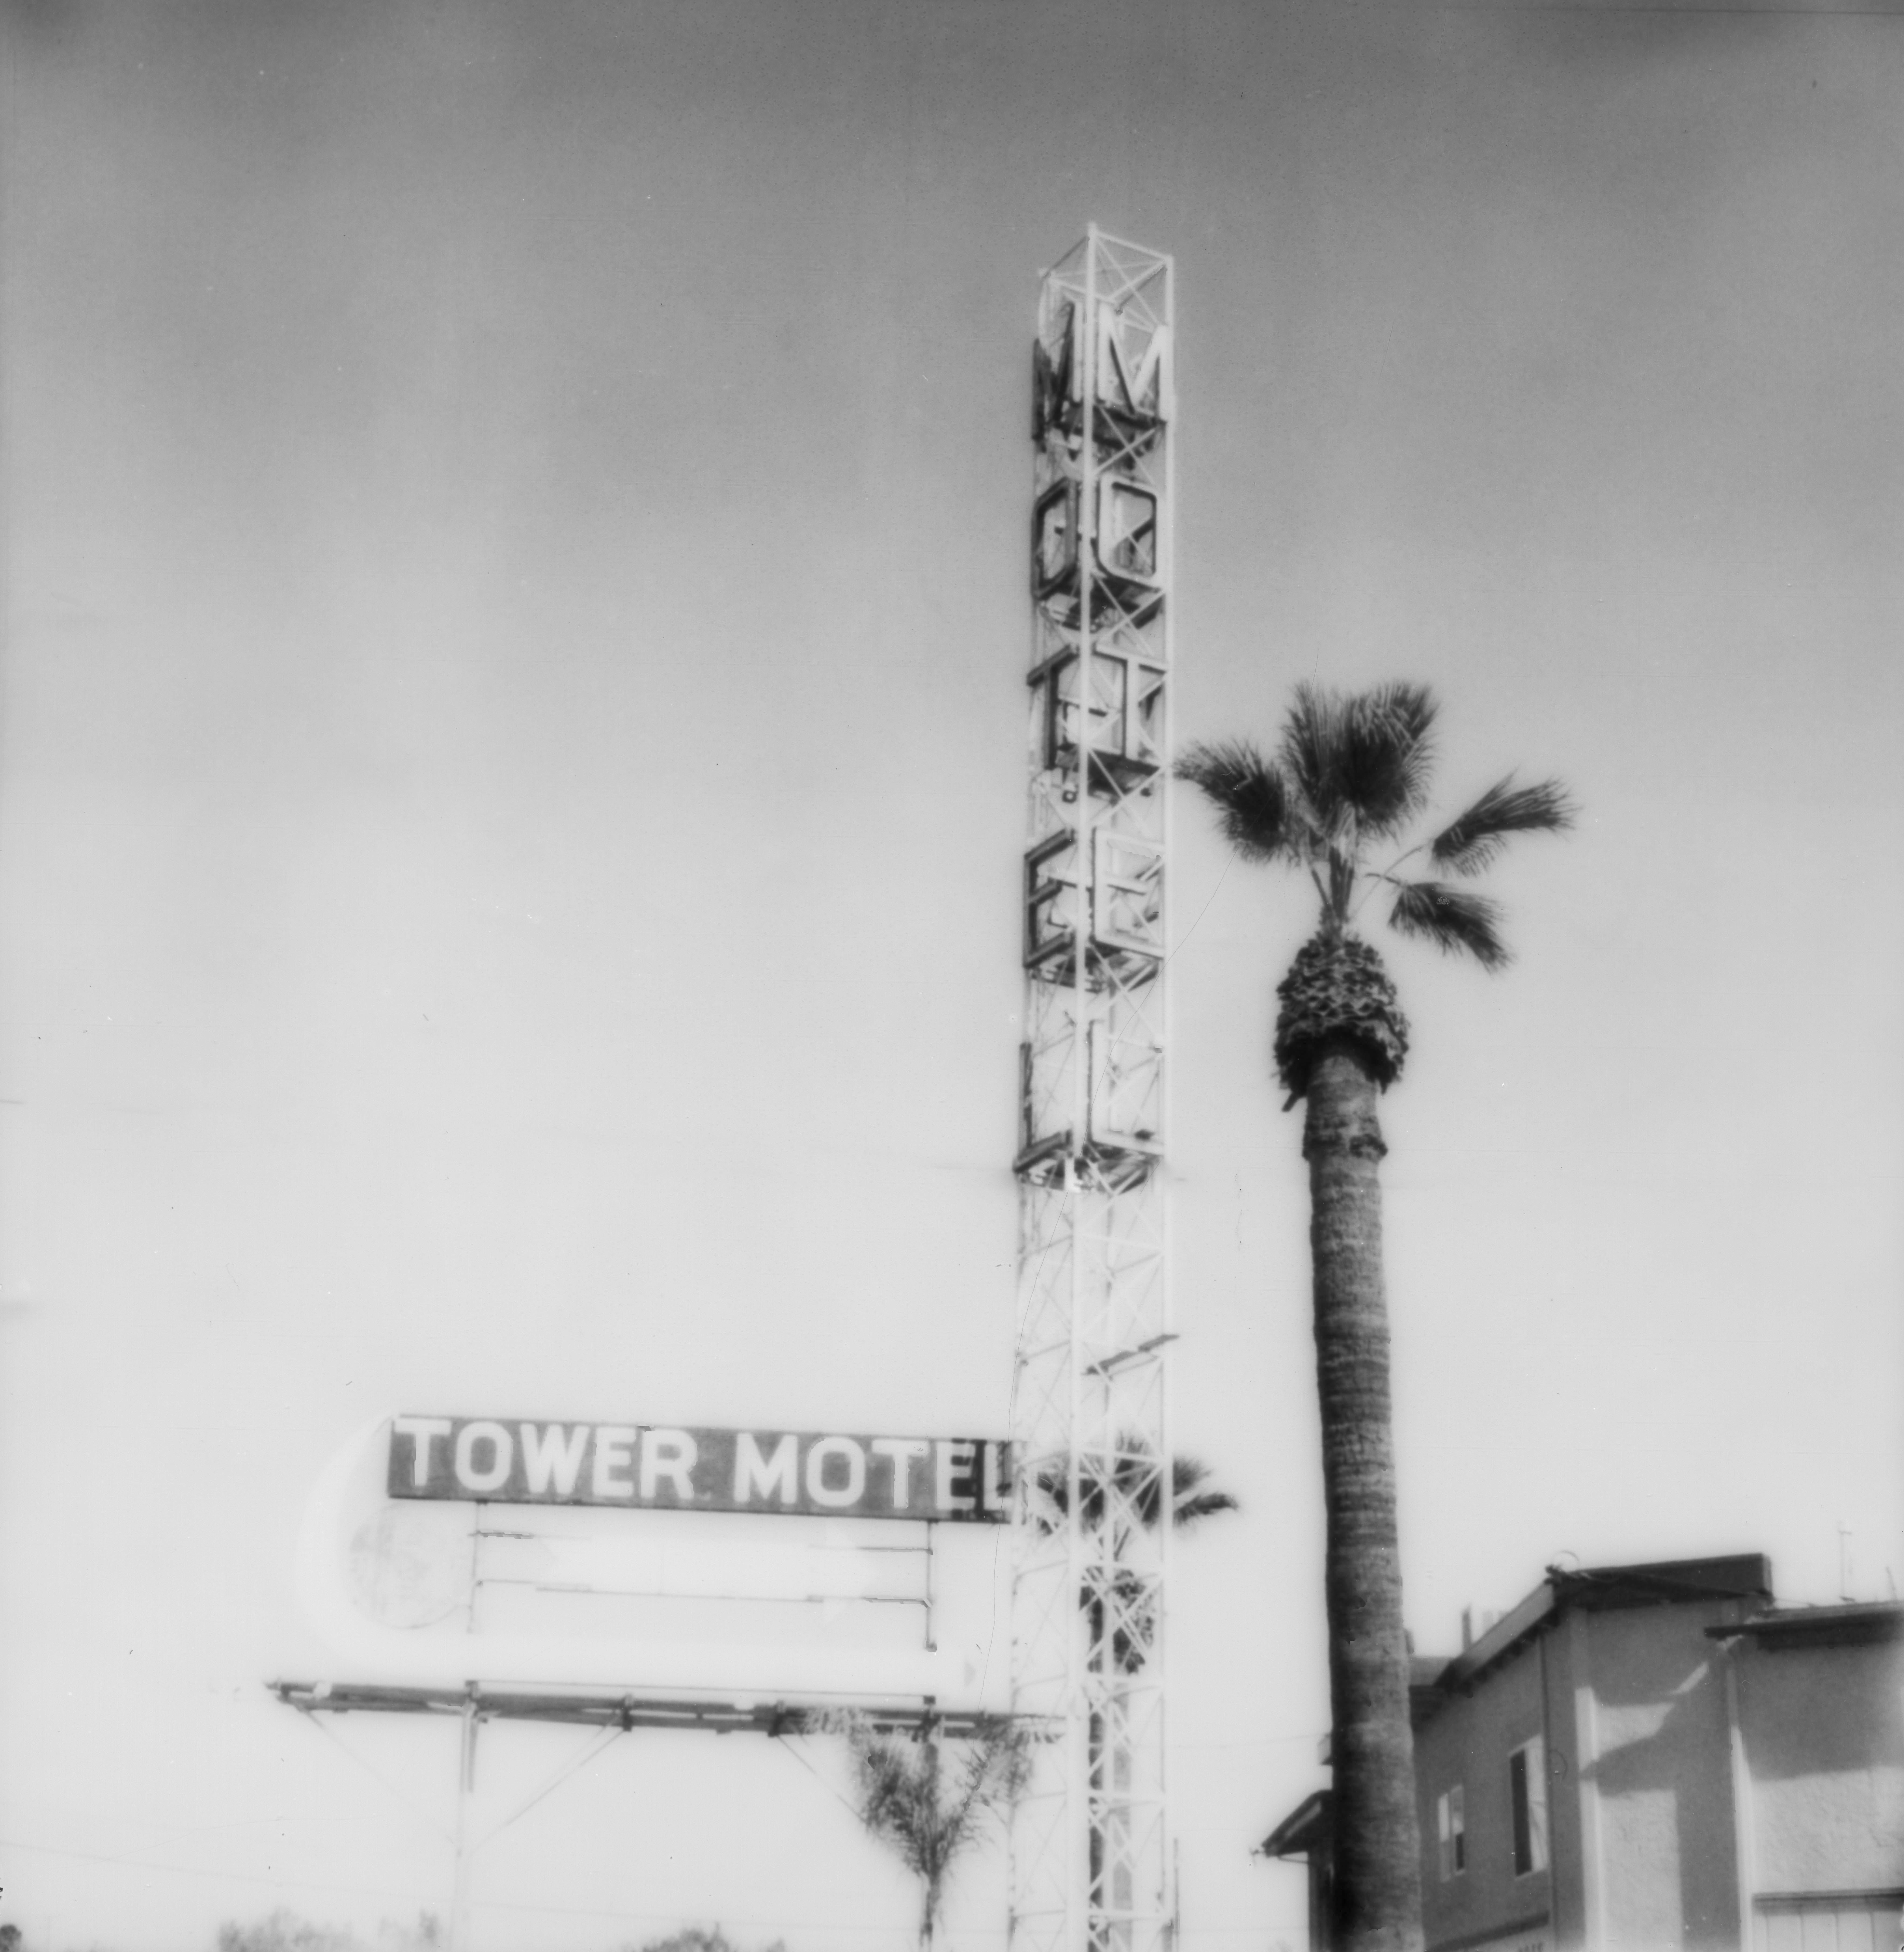 Le motard Tower Motel 2 (Table de tour fantôme) - 21e siècle, Polaroid, paysage